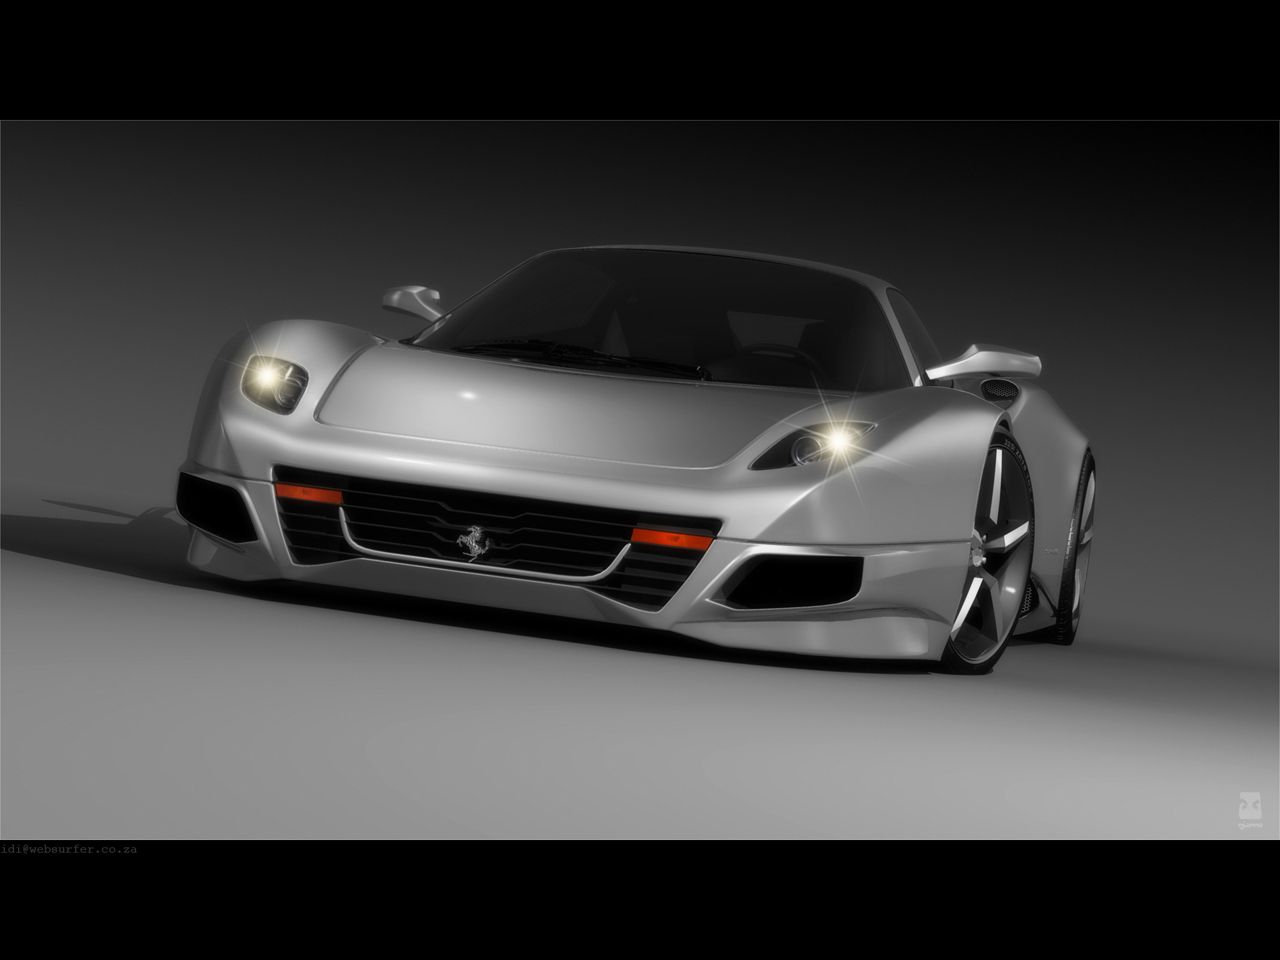 2008 Ferrari F250 Concept Design by Idries Noah